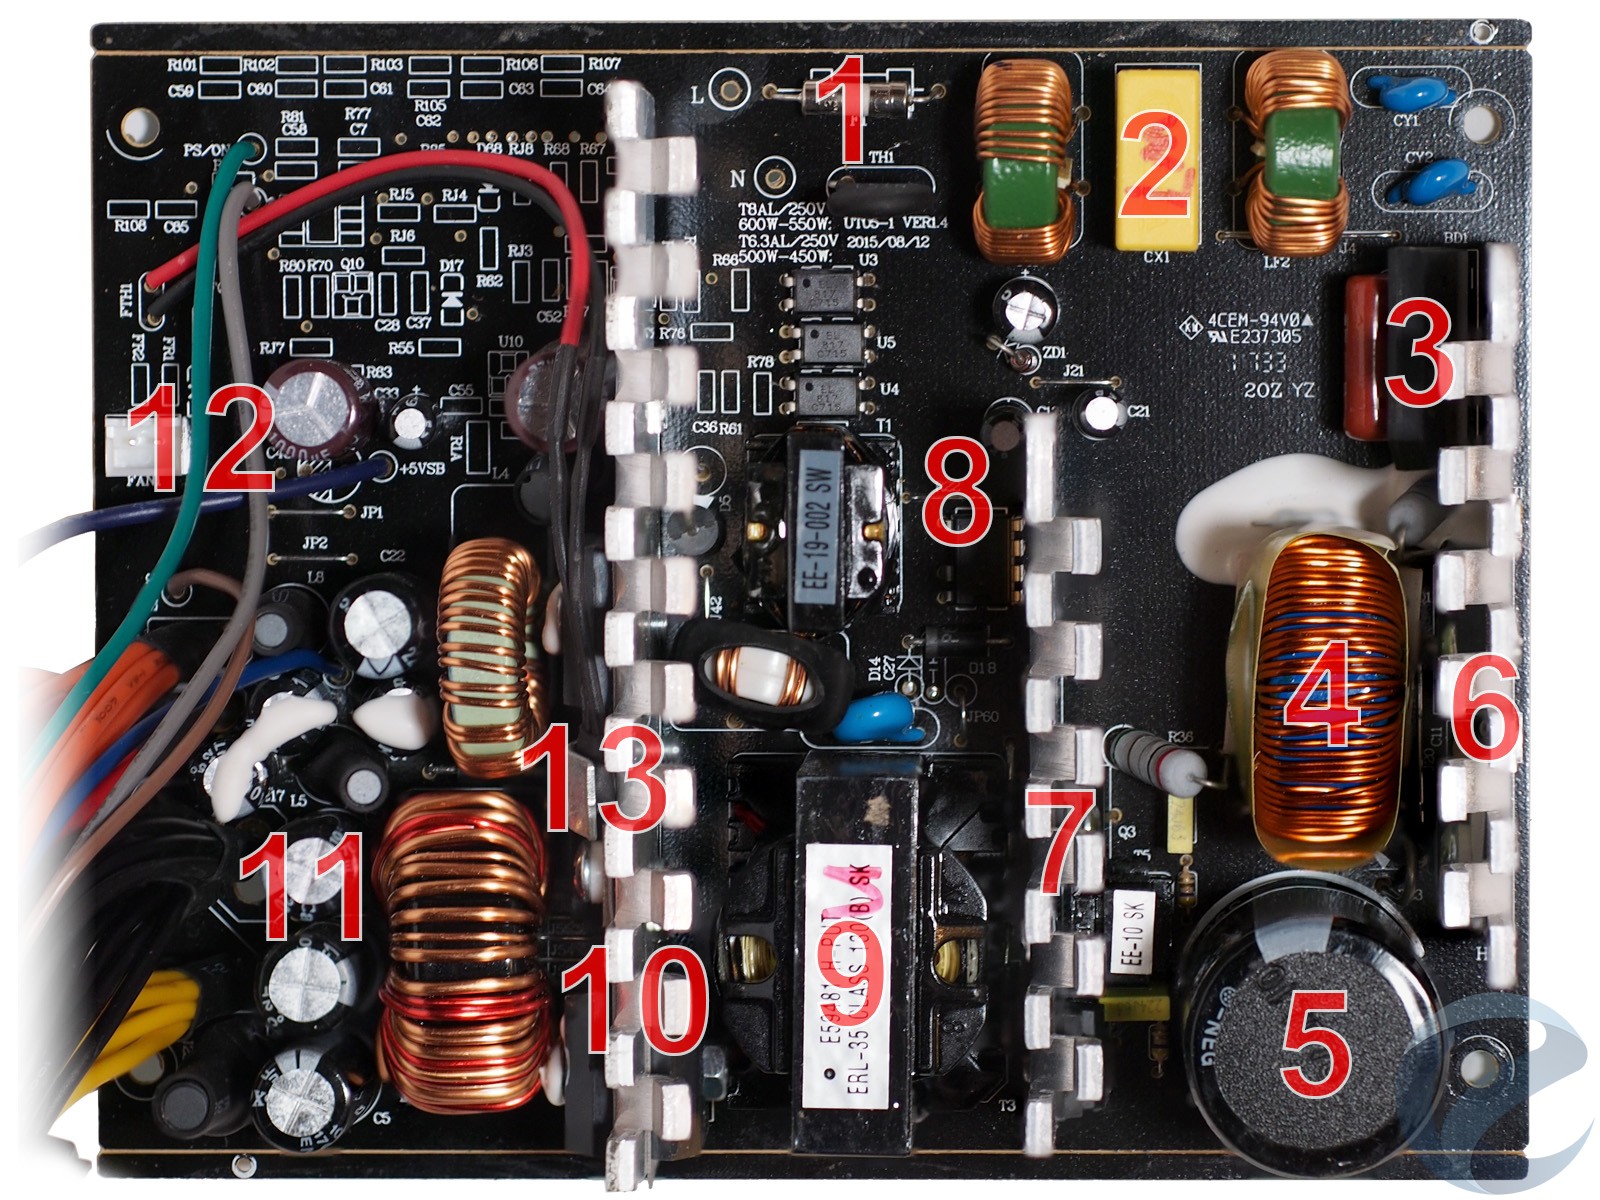 Запобіжник і NTC-термистор;   Вхідний EMI-фільтр;   випрямляч;   Дросель коректора потужності;   Високовольтний конденсатор CapXon серії HP;   Радіатор і компоненти активного коректора потужності (APFC);   Радіатор з MOSFET транзисторами;   Трансформатор джерела чергового живлення і EM8564A;   Силовий трансформатор;   радіатор перетворювача   Фільтруючі конденсатори вихідних ліній живлення;   Роз'єм підключення вентилятора;   Термістор системи управління швидкістю обертання вентилятора